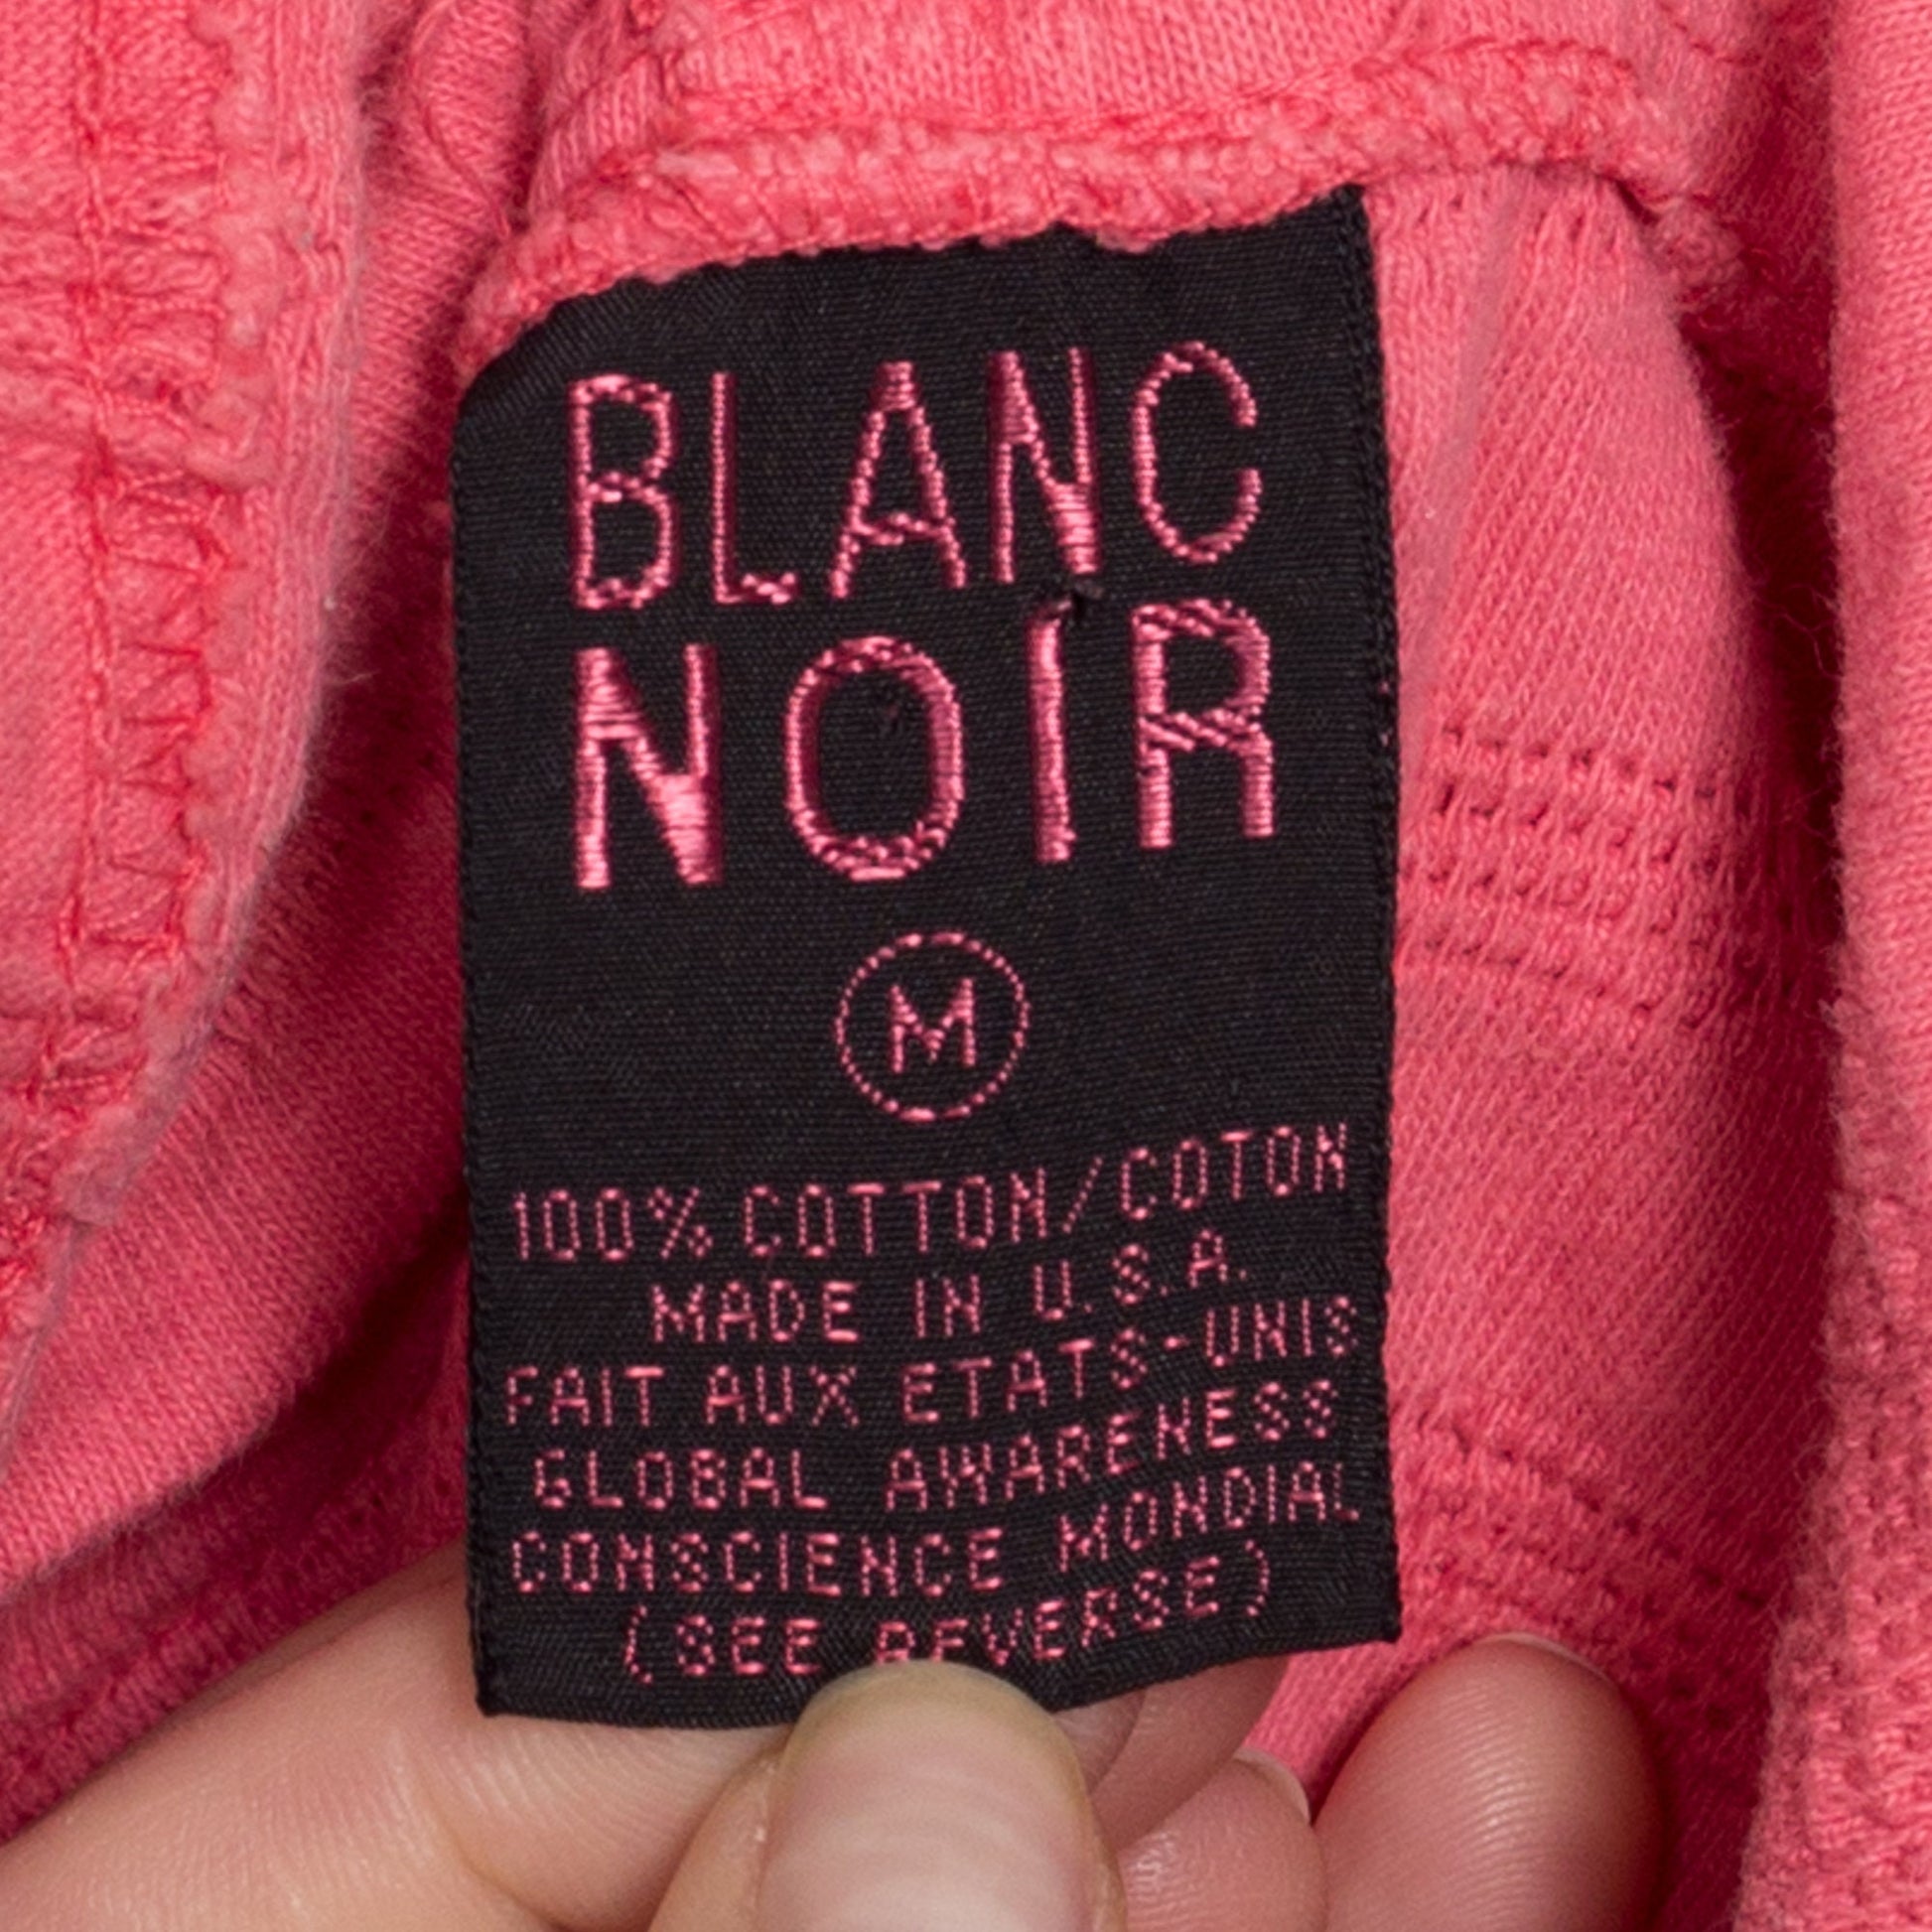 90s Blank Noir Coral Pink Textured Hooded Crop Top - Medium | Vintage Streetwear Oversized Hoodie T Shirt